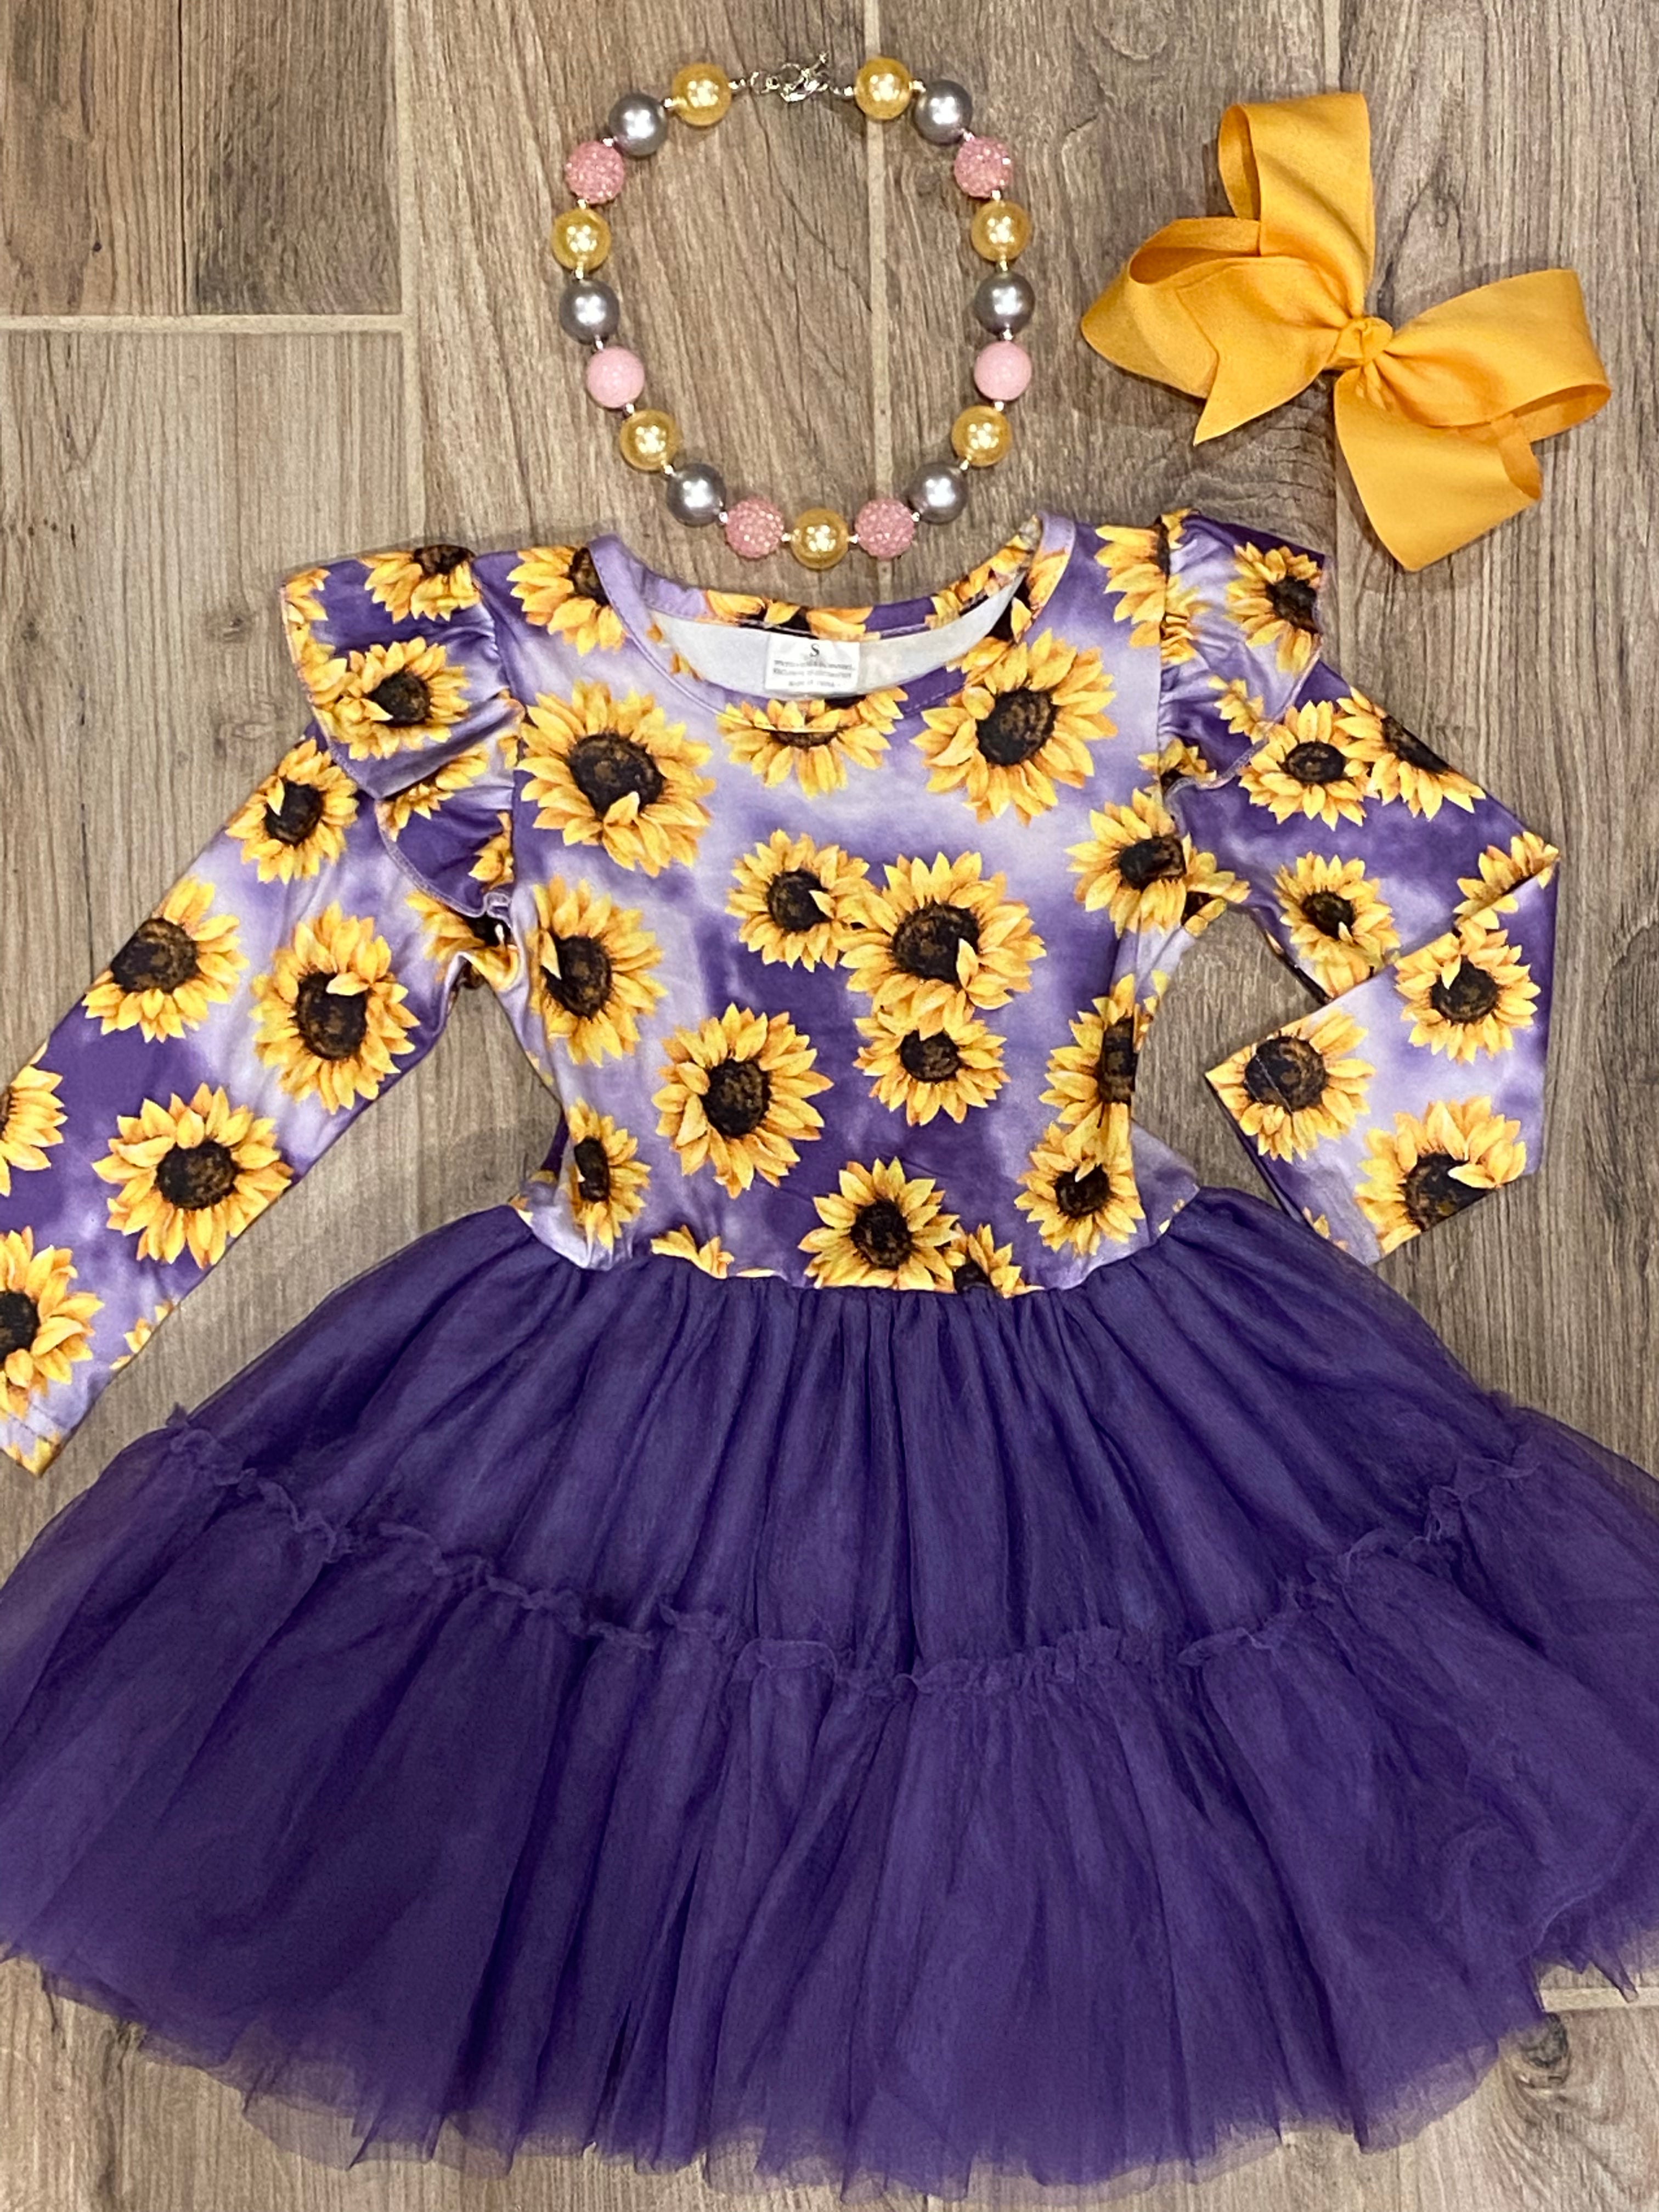 Dress - Sunflower Purple Tulle - Crazy Cute Bowtique